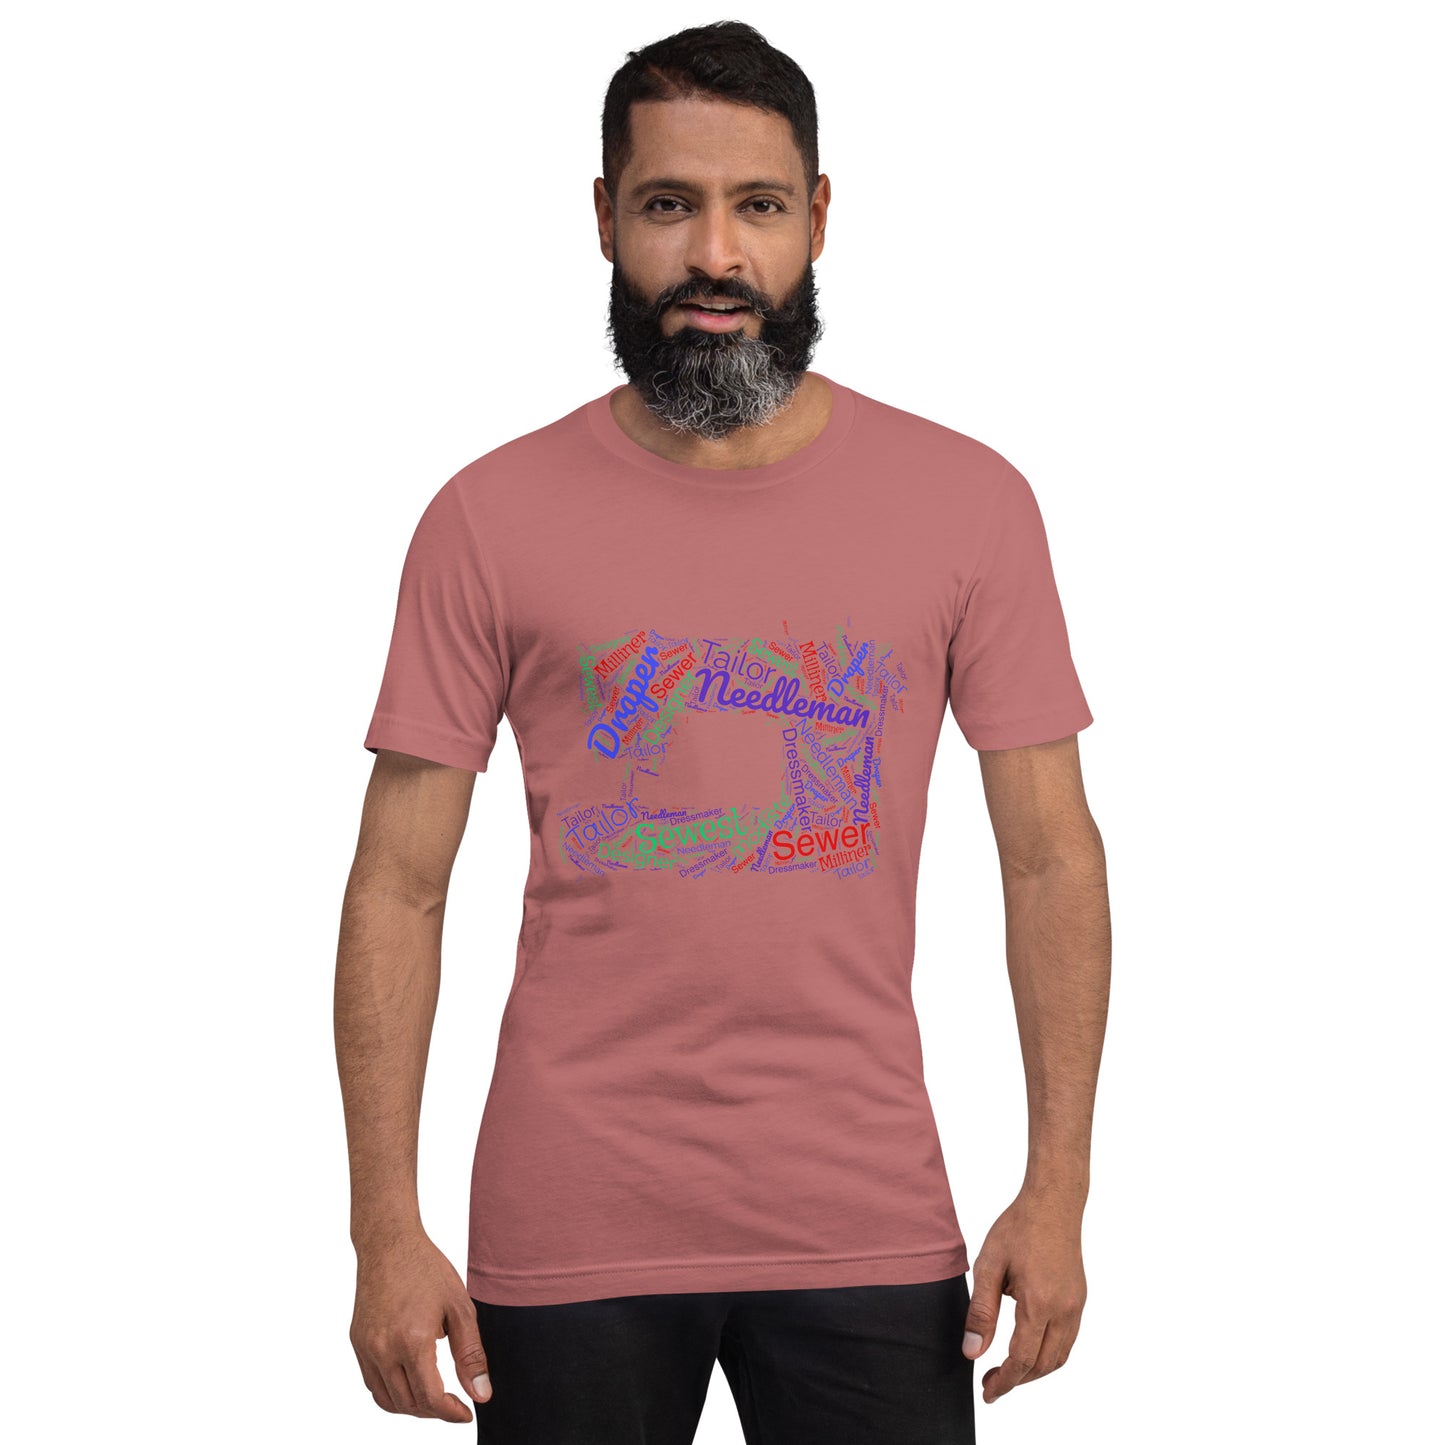 Tailor Word Cloud Unisex t-shirt